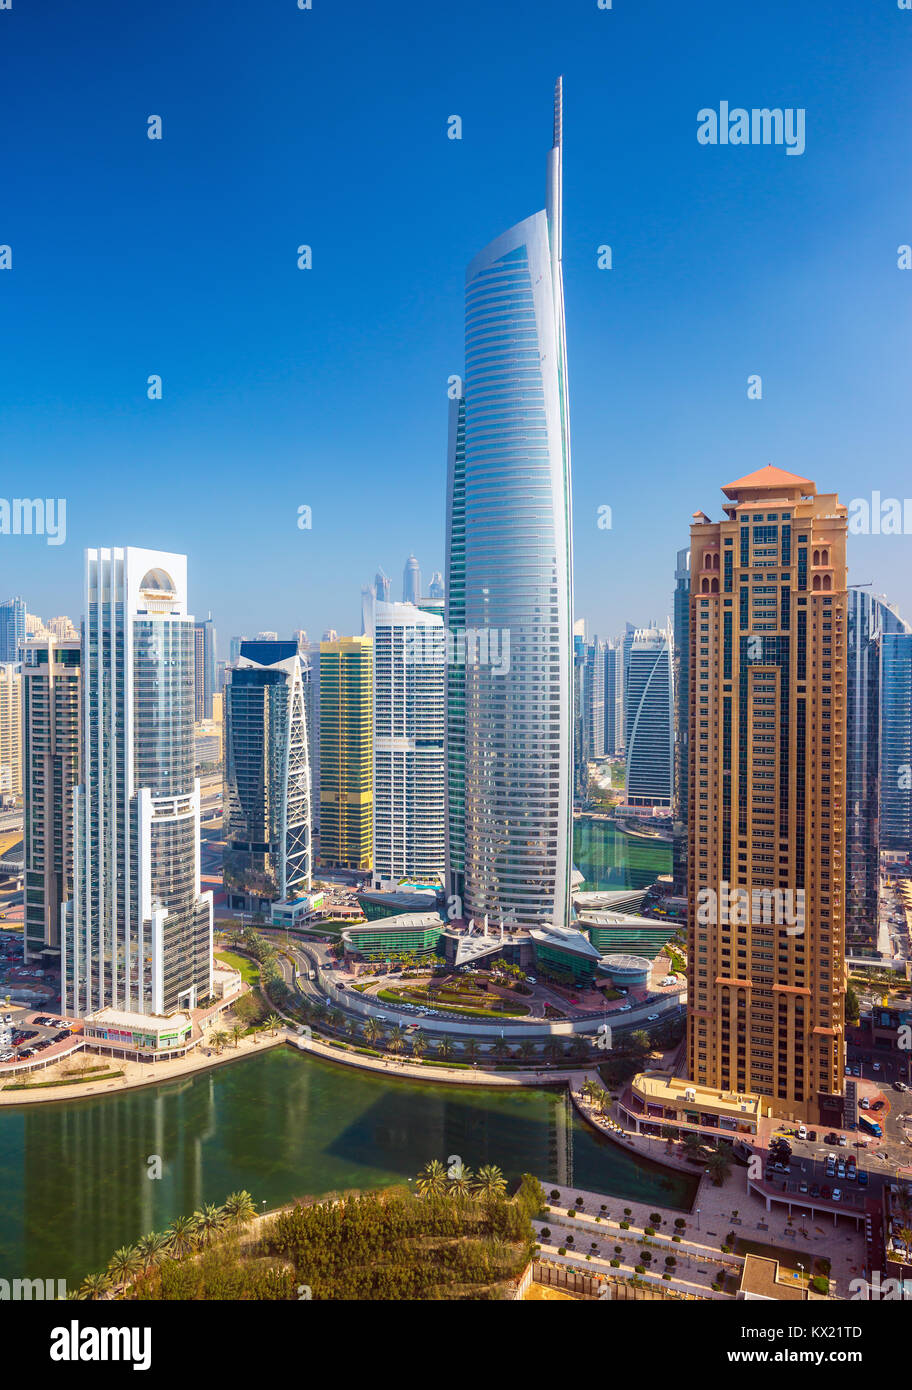 L'architecture moderne de luxe de Dubaï dans le port de plaisance de Dubaï, Emirats Arabes Unis Banque D'Images